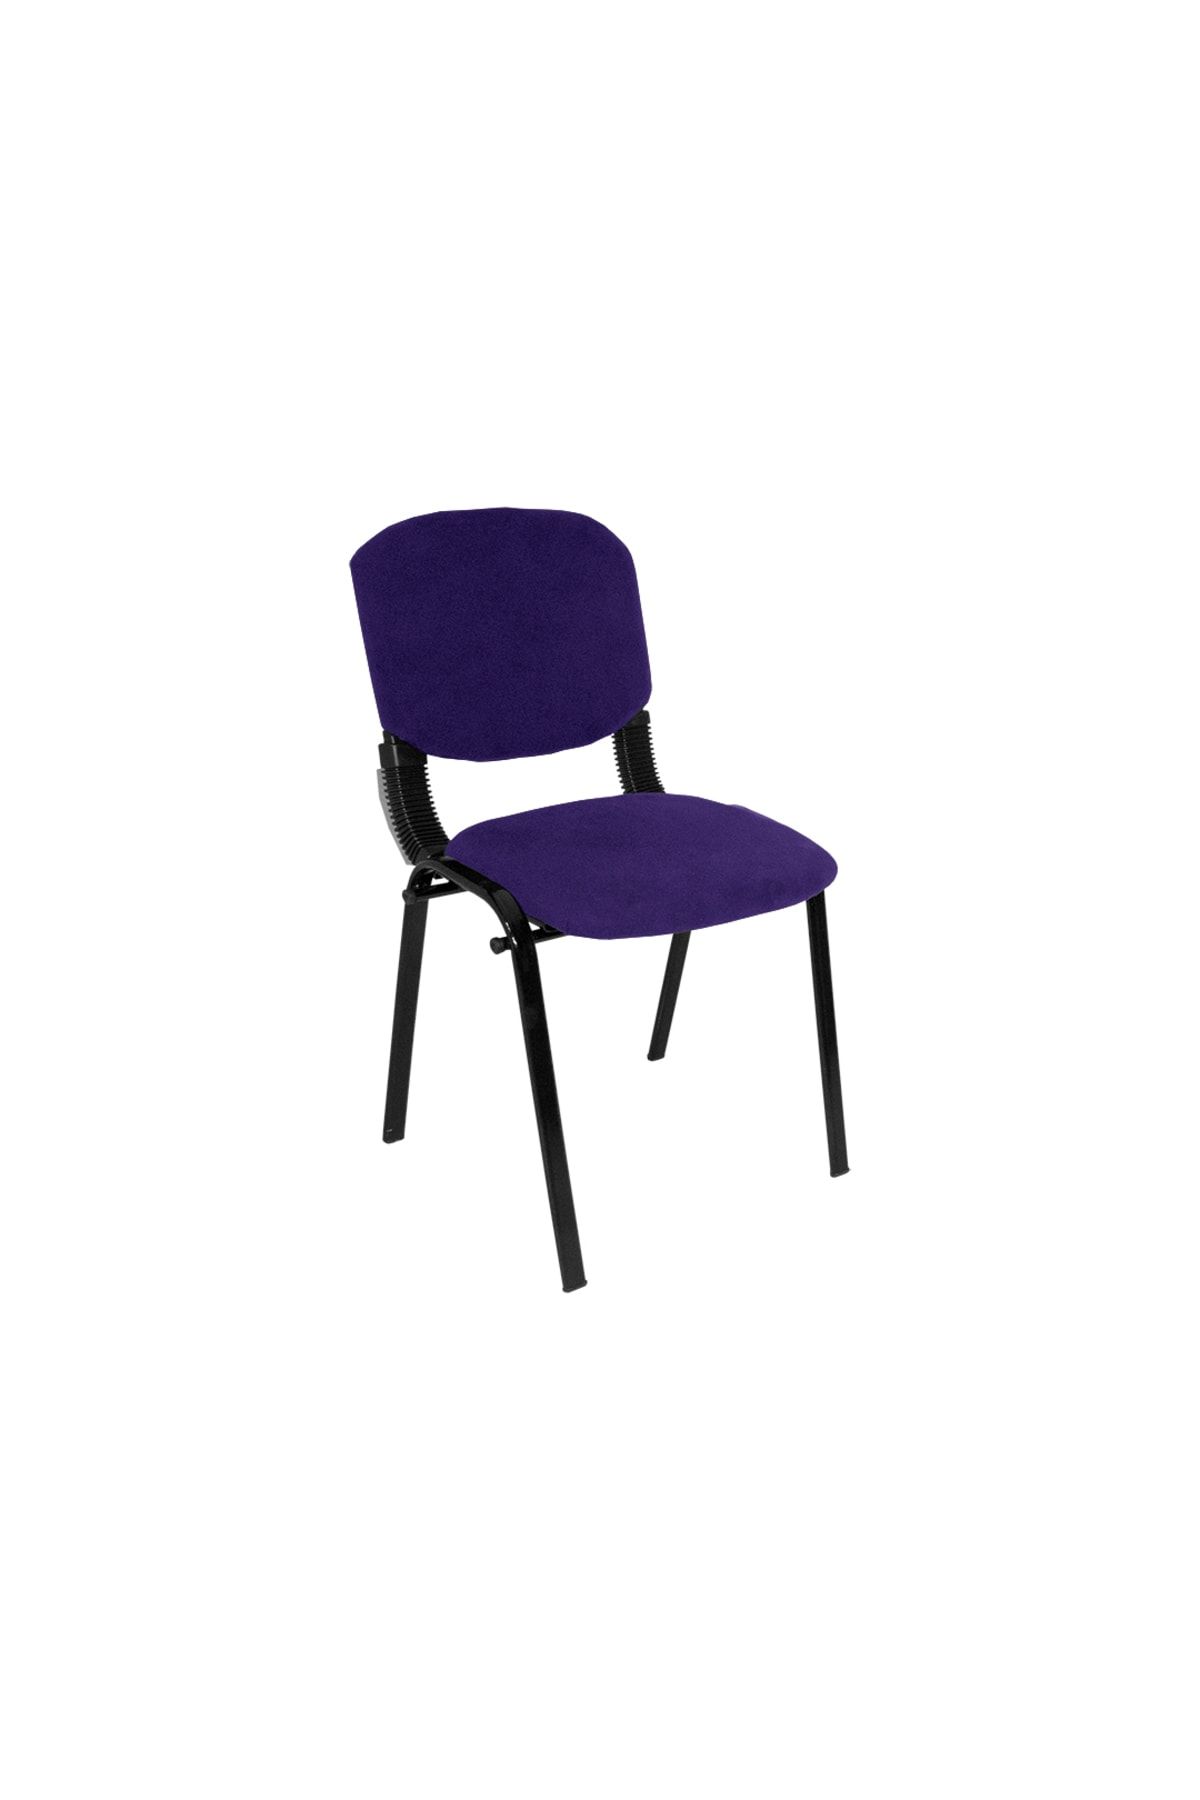 Dockers Form Ofis Ve Toplantı Sandalyesi (kumaş) - Lacivert